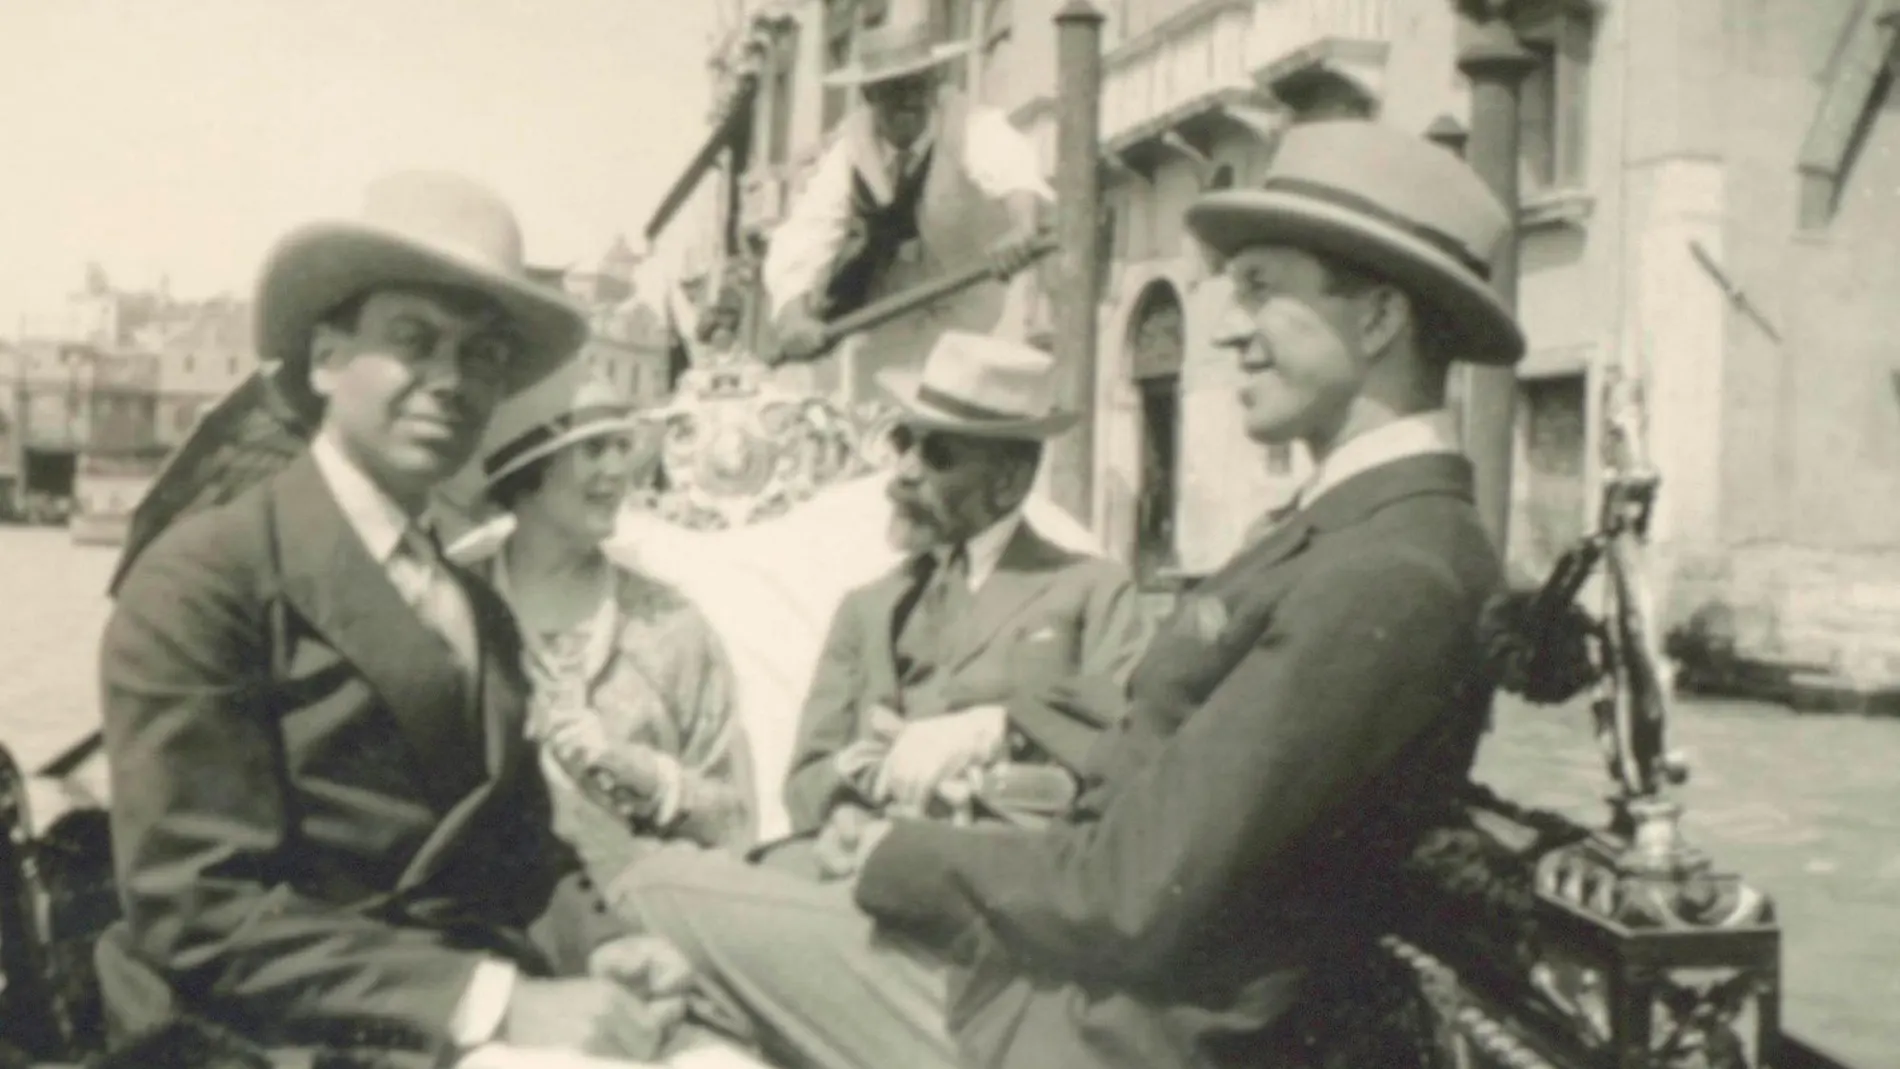 De izq. a der., Cole Porter, Linda Lee Thomas, Bernard Berenson, y Howard Sturges, en una góndola veneciana en 1923